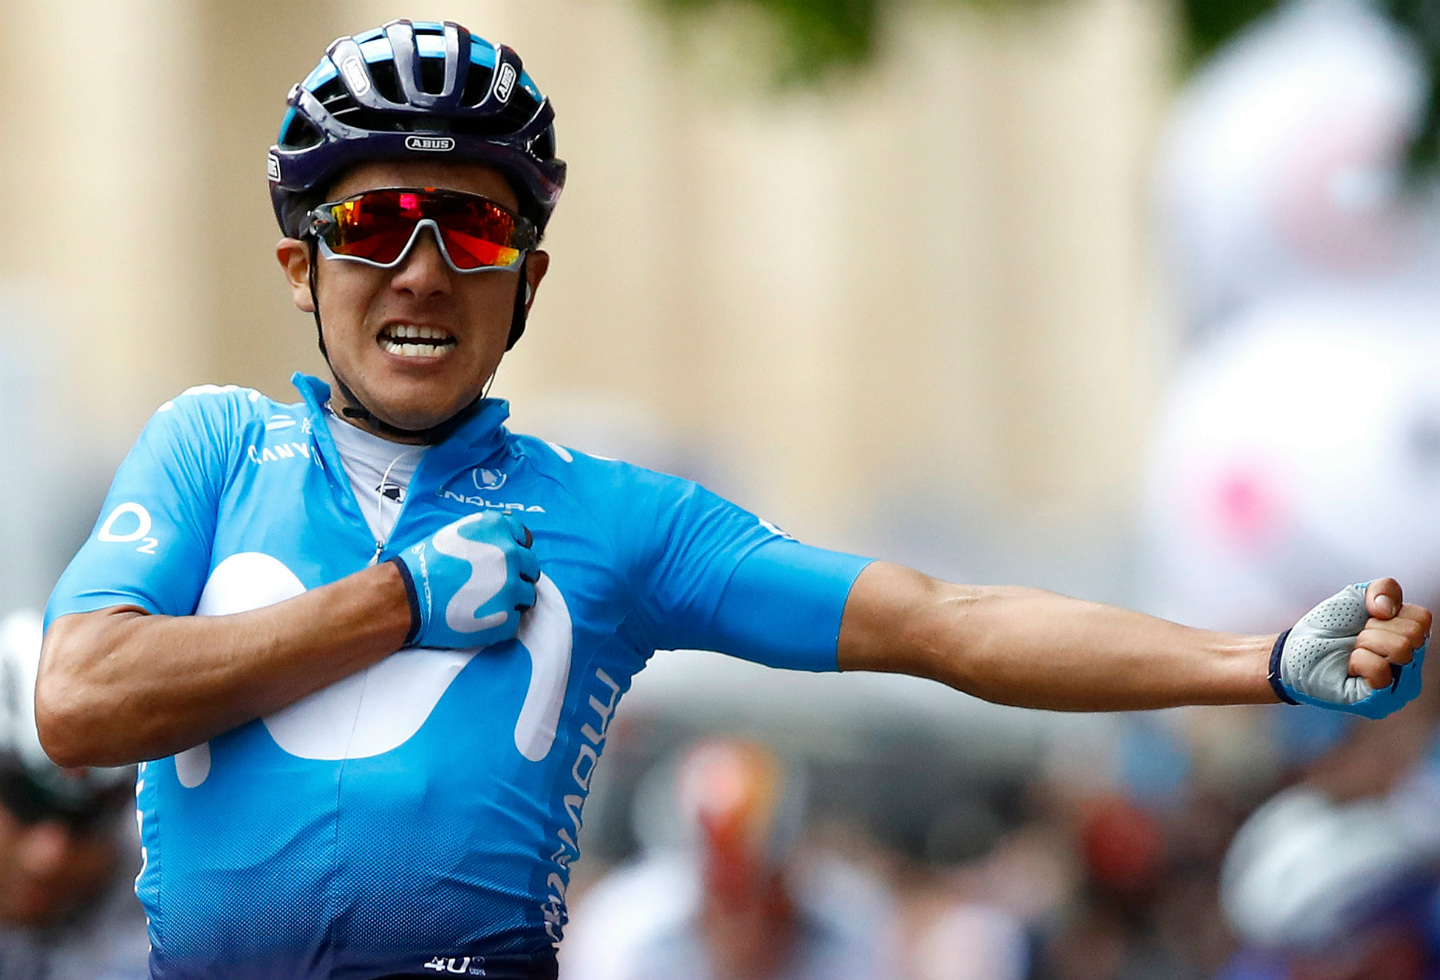 Richard Carapaz no correrá en la Vuelta a España